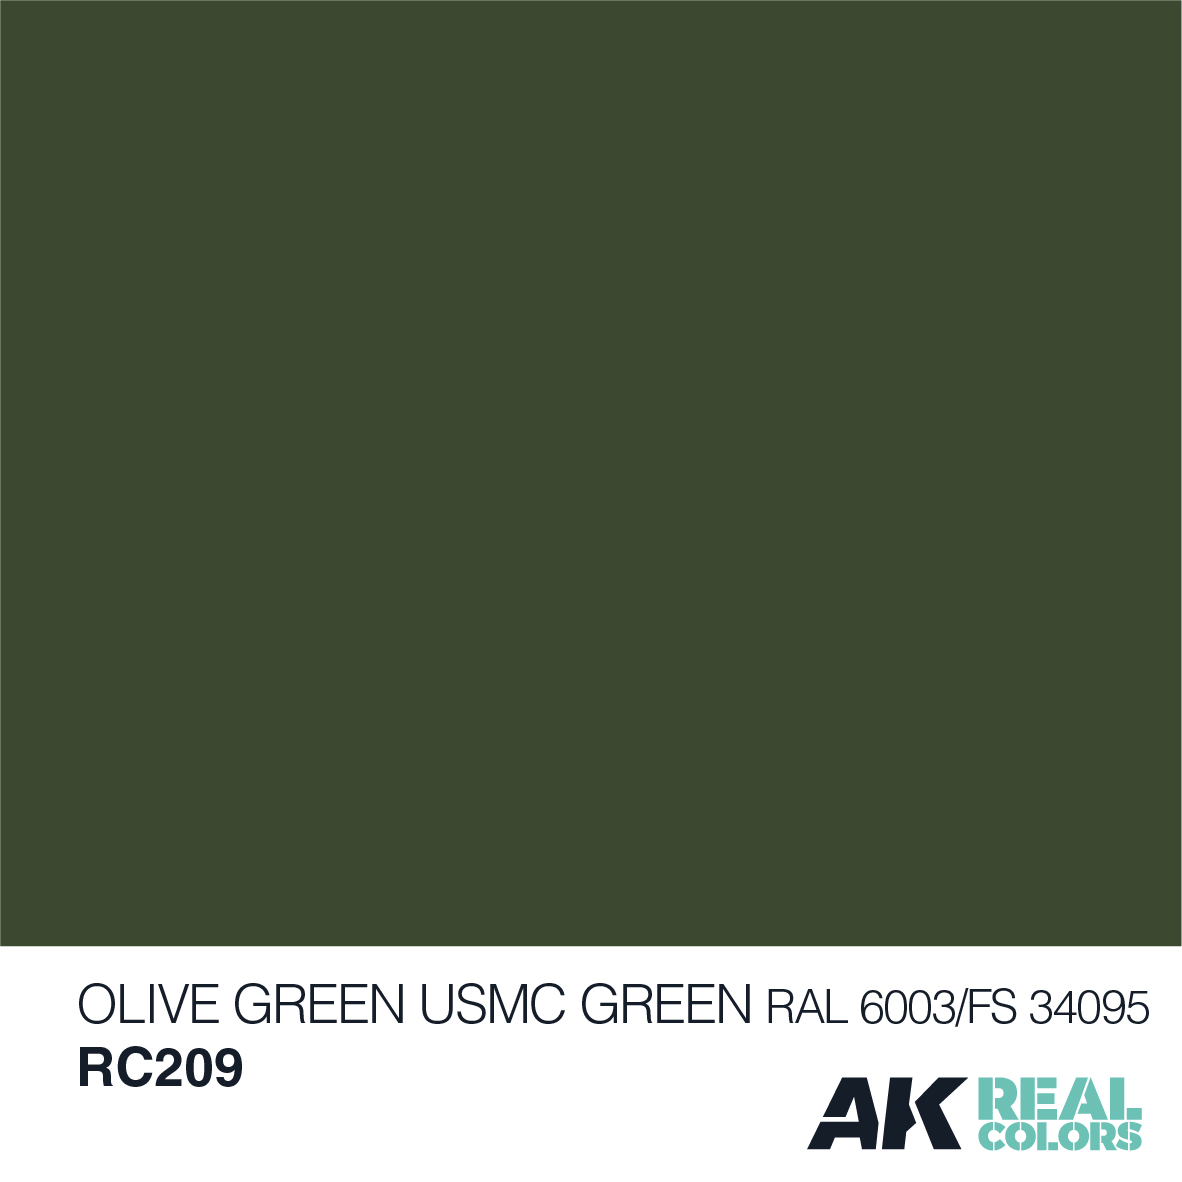 Olive Green/USMC Green RAL 6003/FS34095